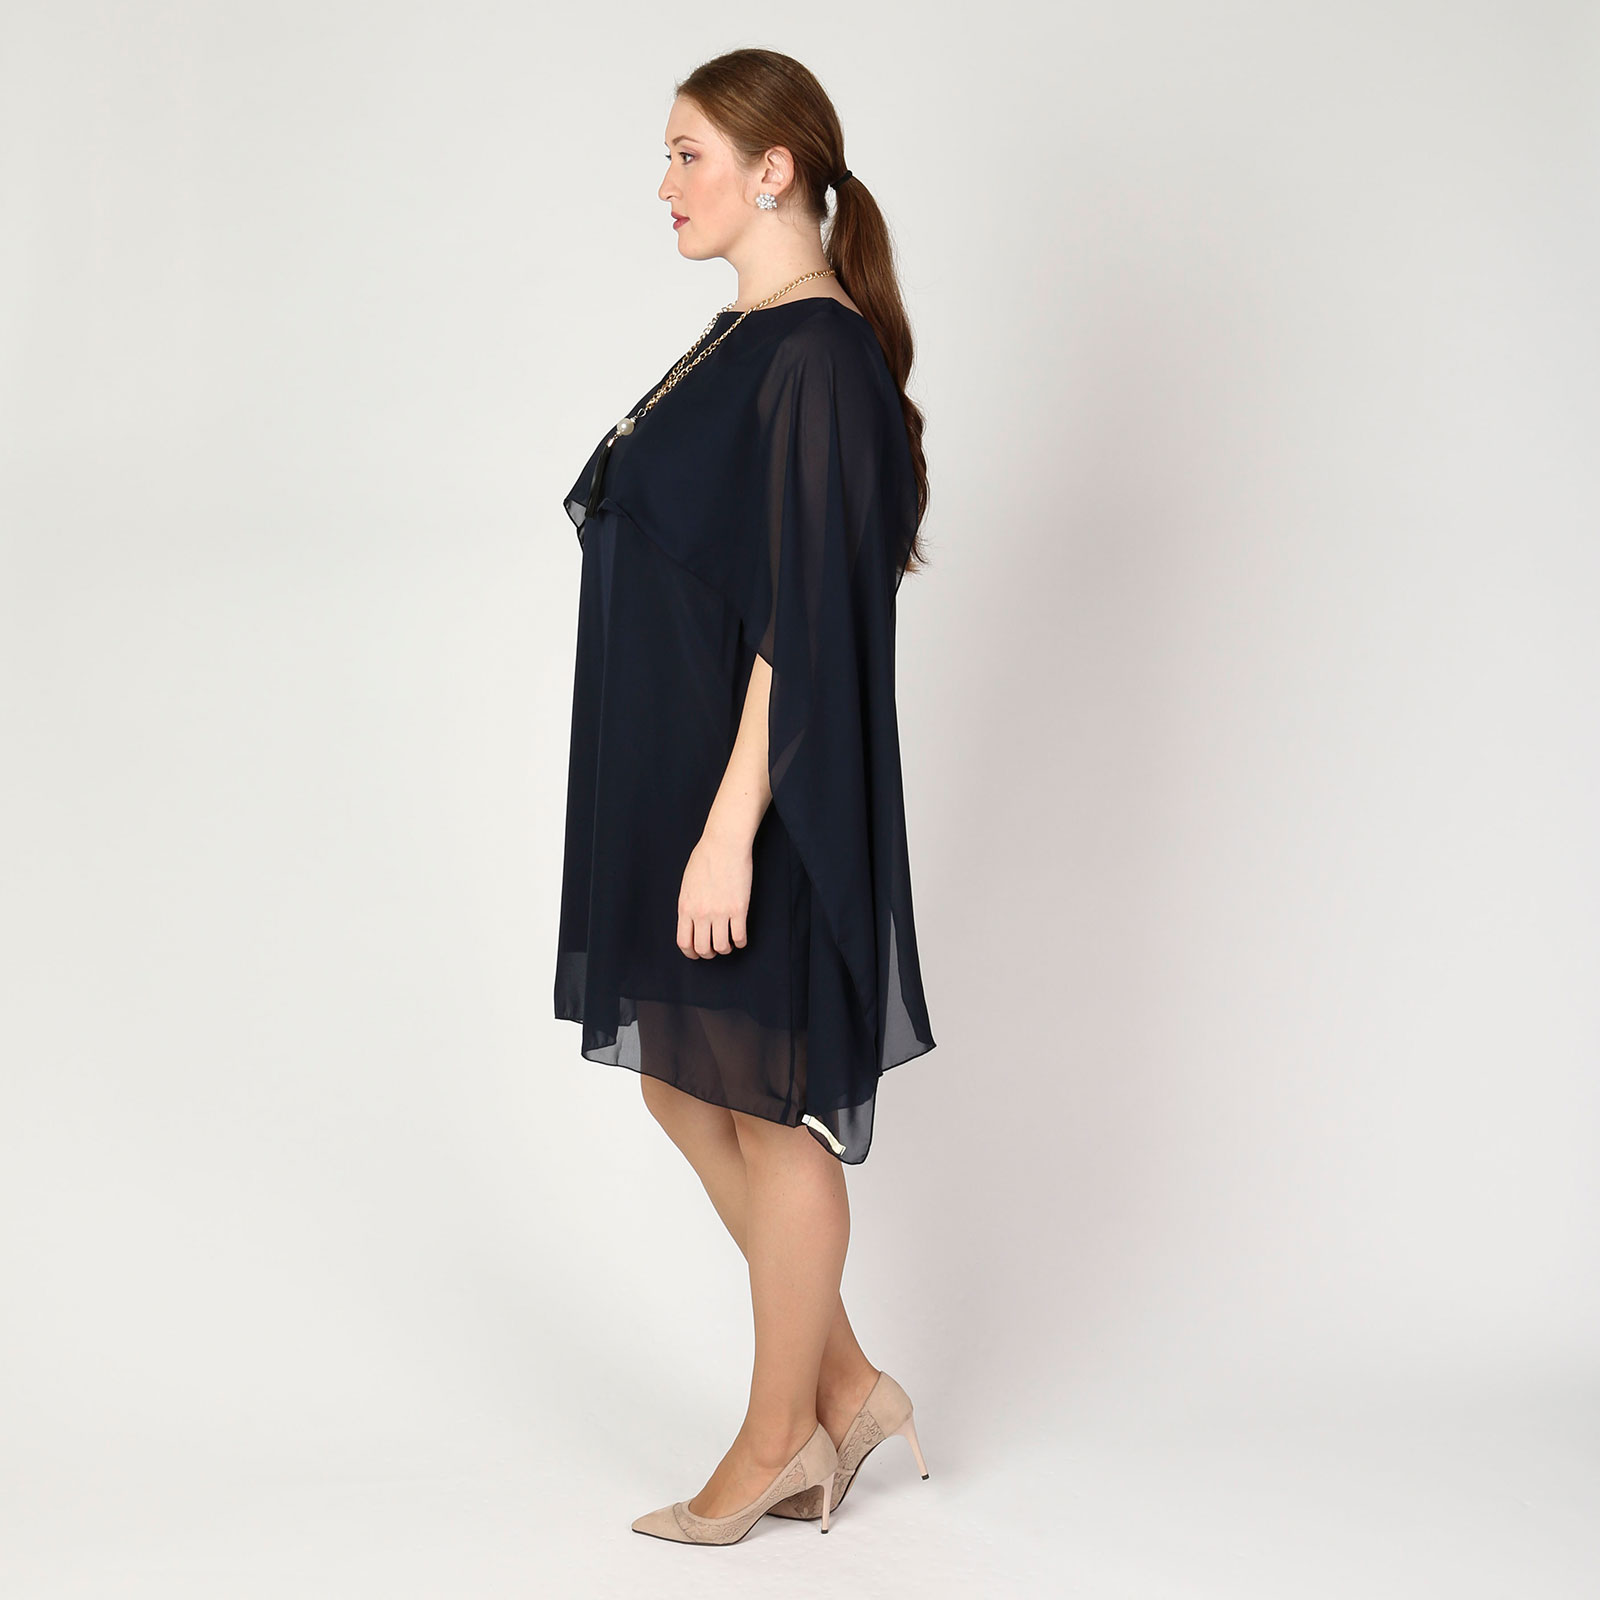 Платье из шифона с украшением в комплекте Bianka Modeno, размер 58, цвет синий - фото 5